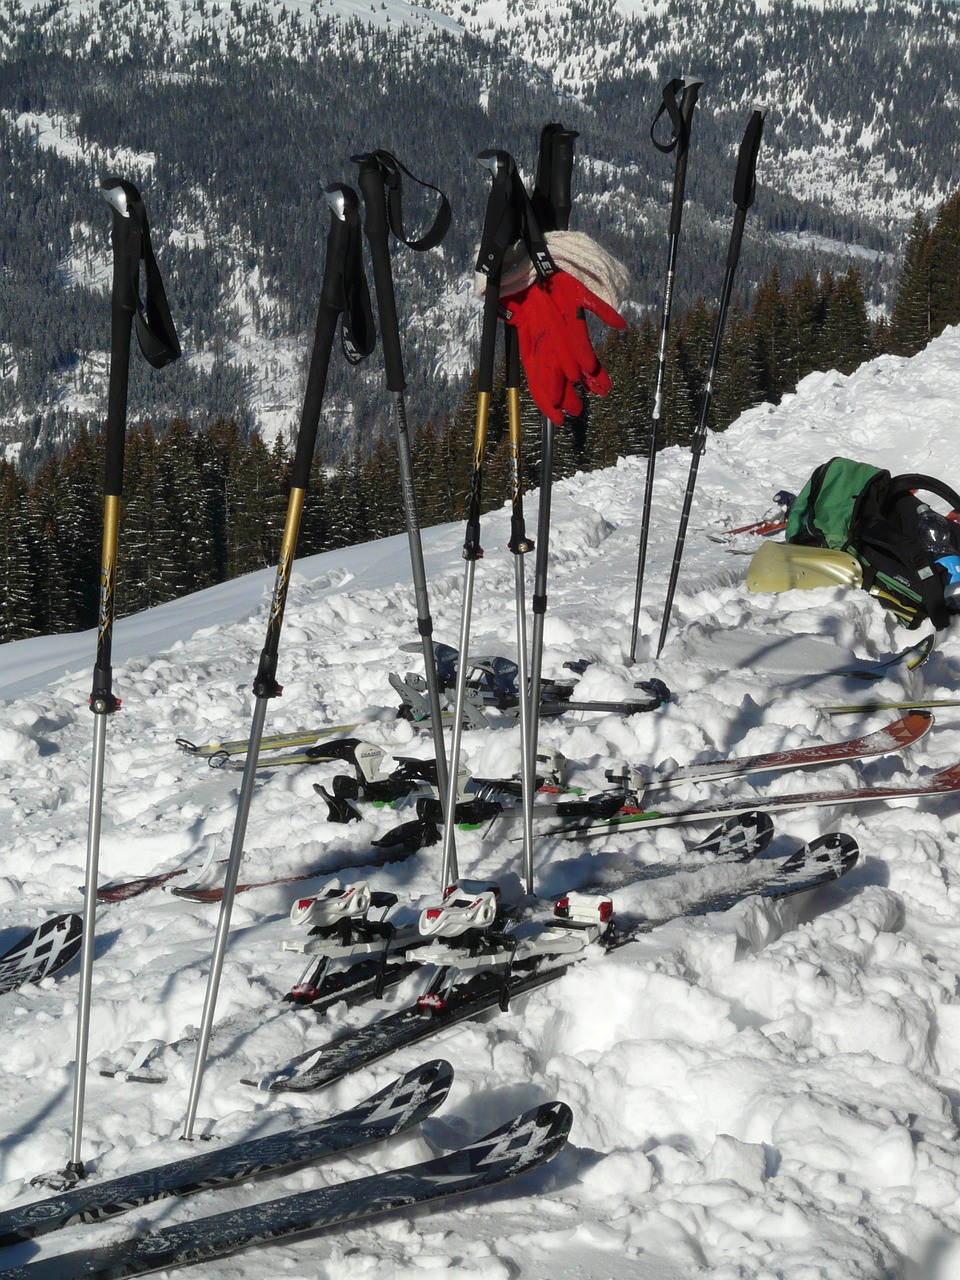 Equipo de esquí